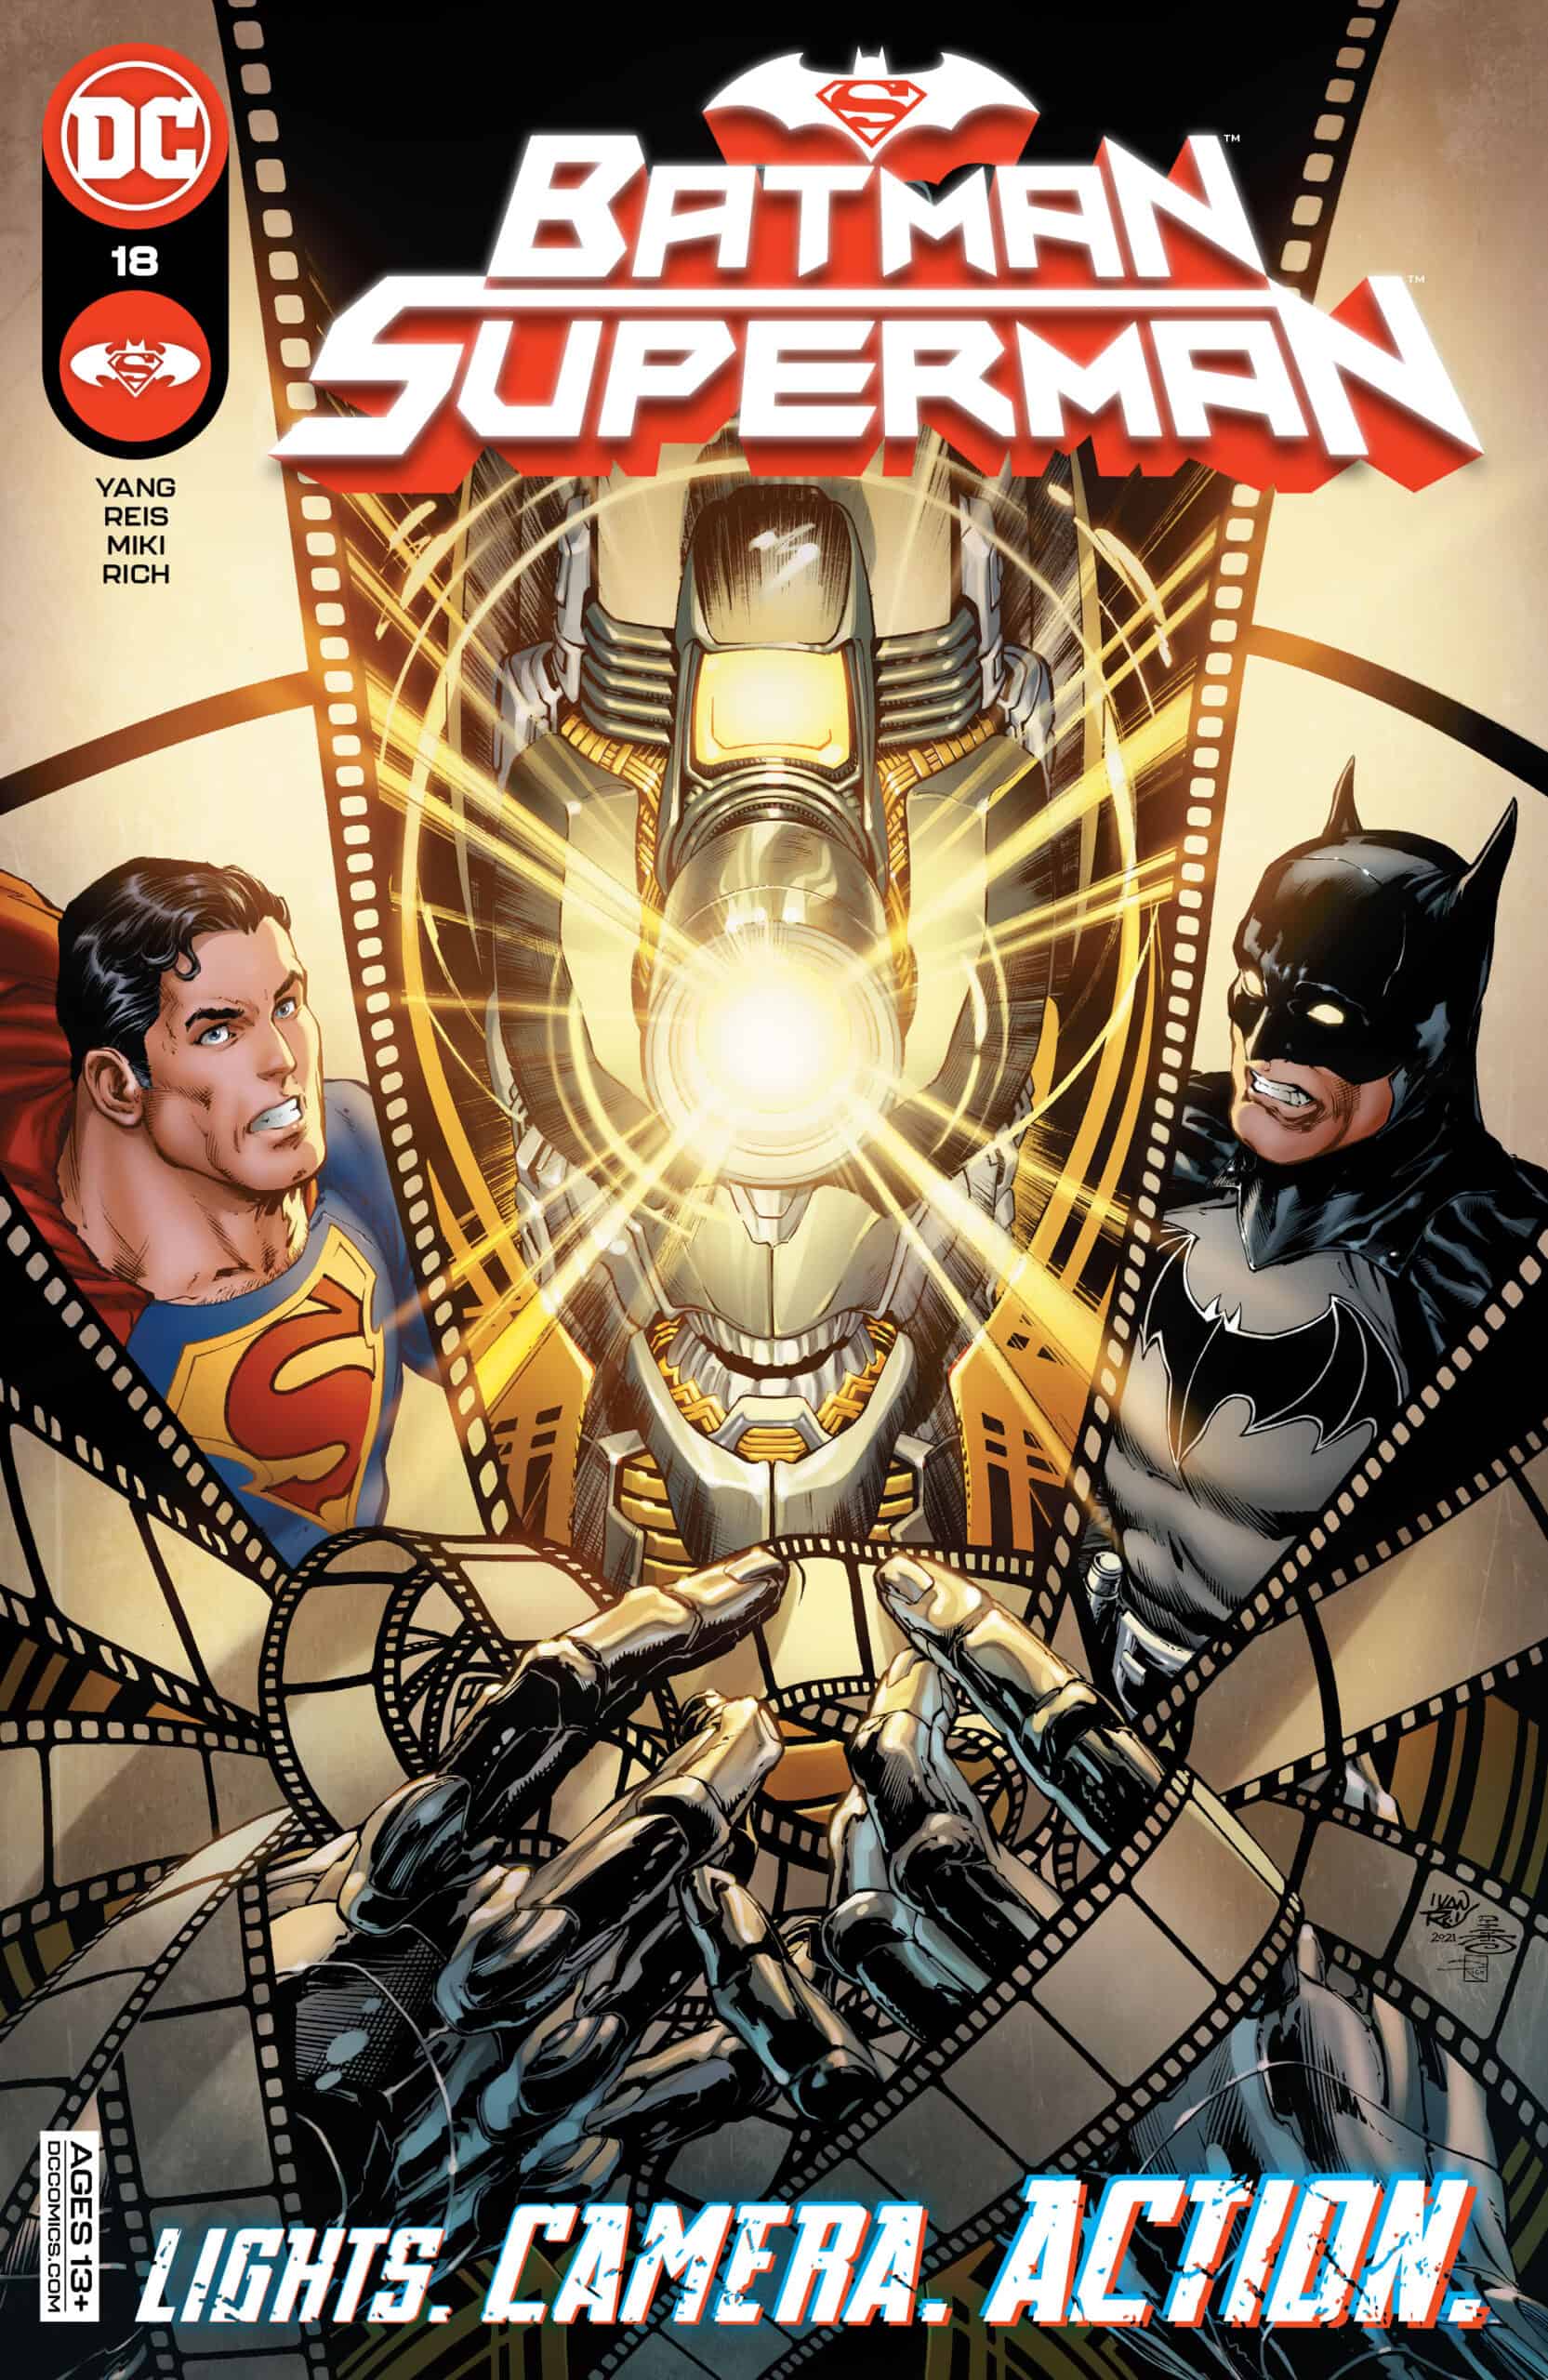 SNEAK PEEK: Preview of DC Comics BATMAN / SUPERMAN #18 - Comic Watch